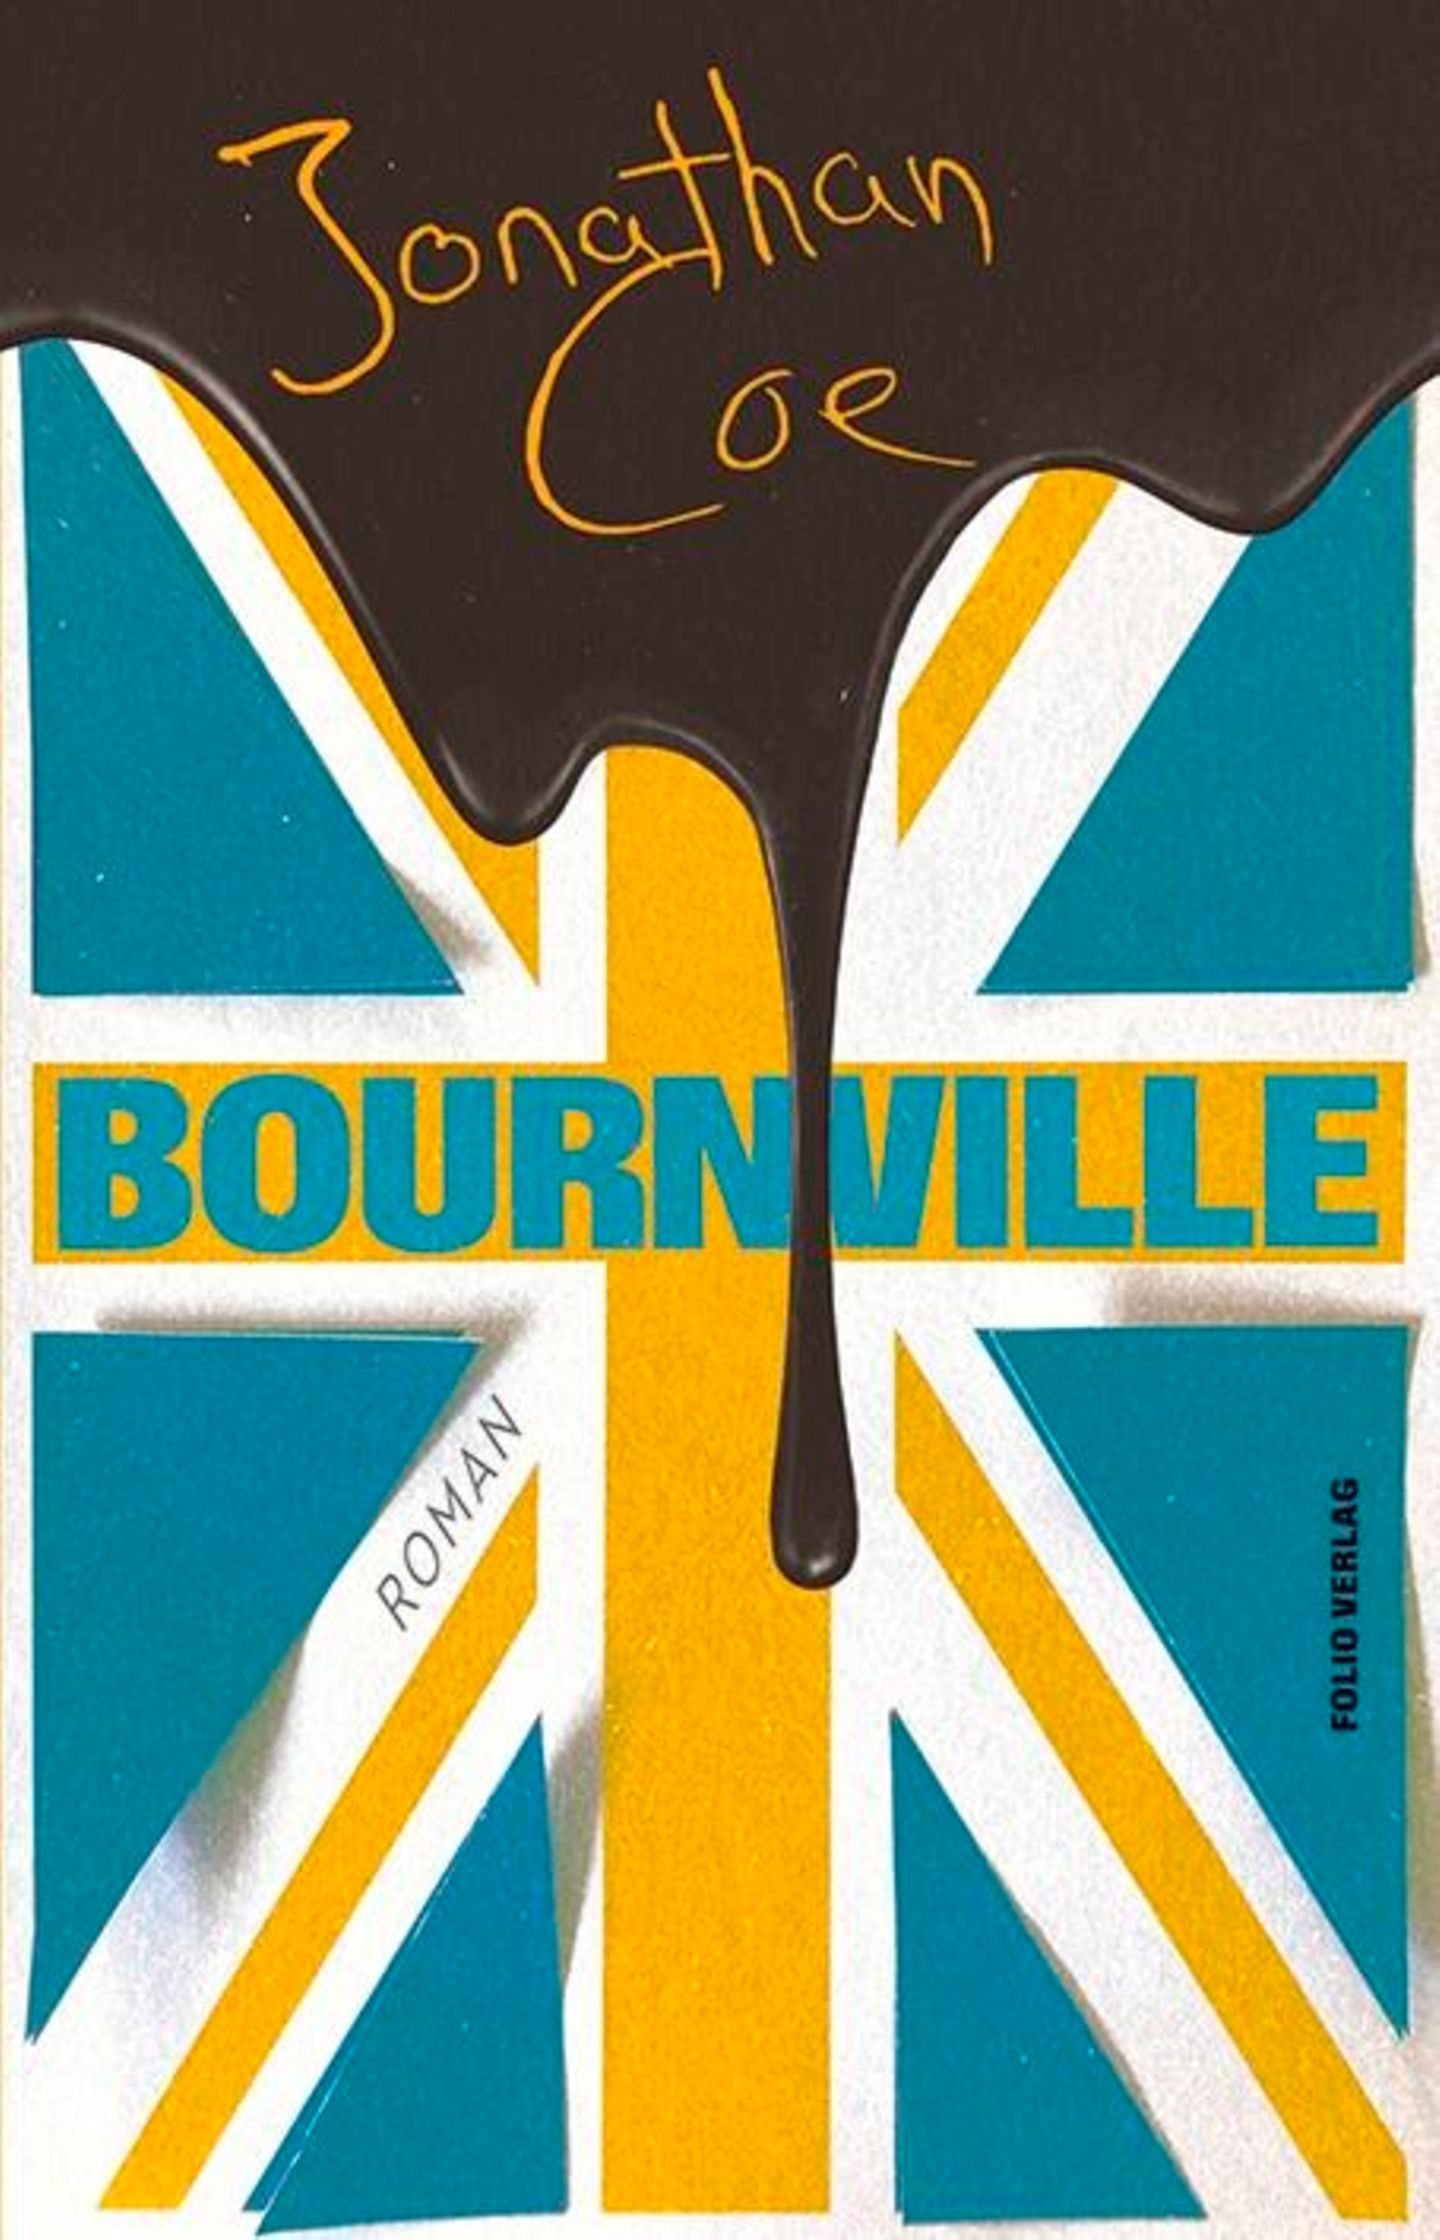 Buchtipps der Redaktion: Buchcover "Bournville"